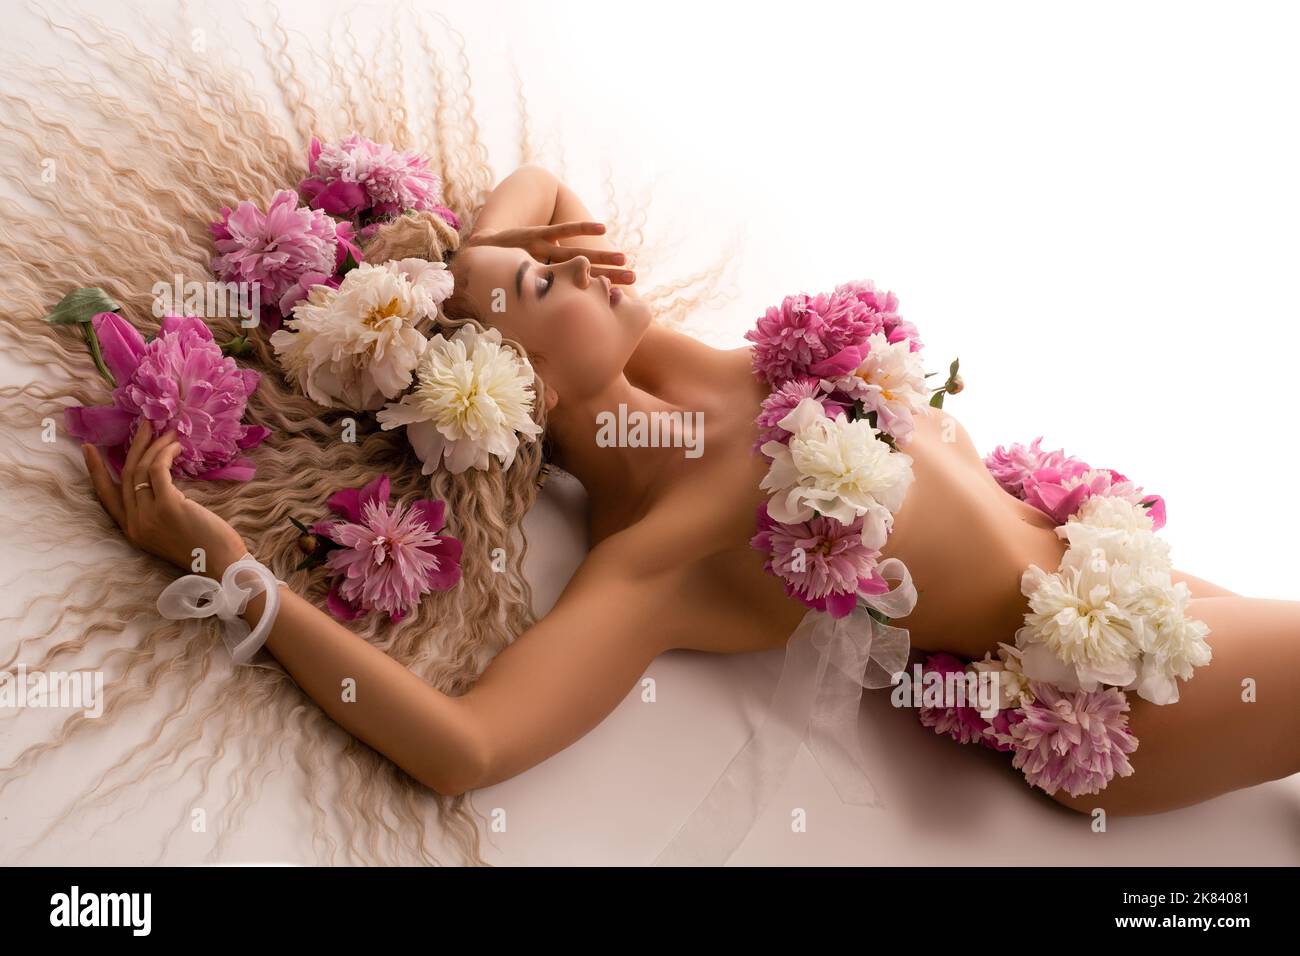 Donna nuda sensuale con fiori sul corpo sdraiato sul letto Foto Stock